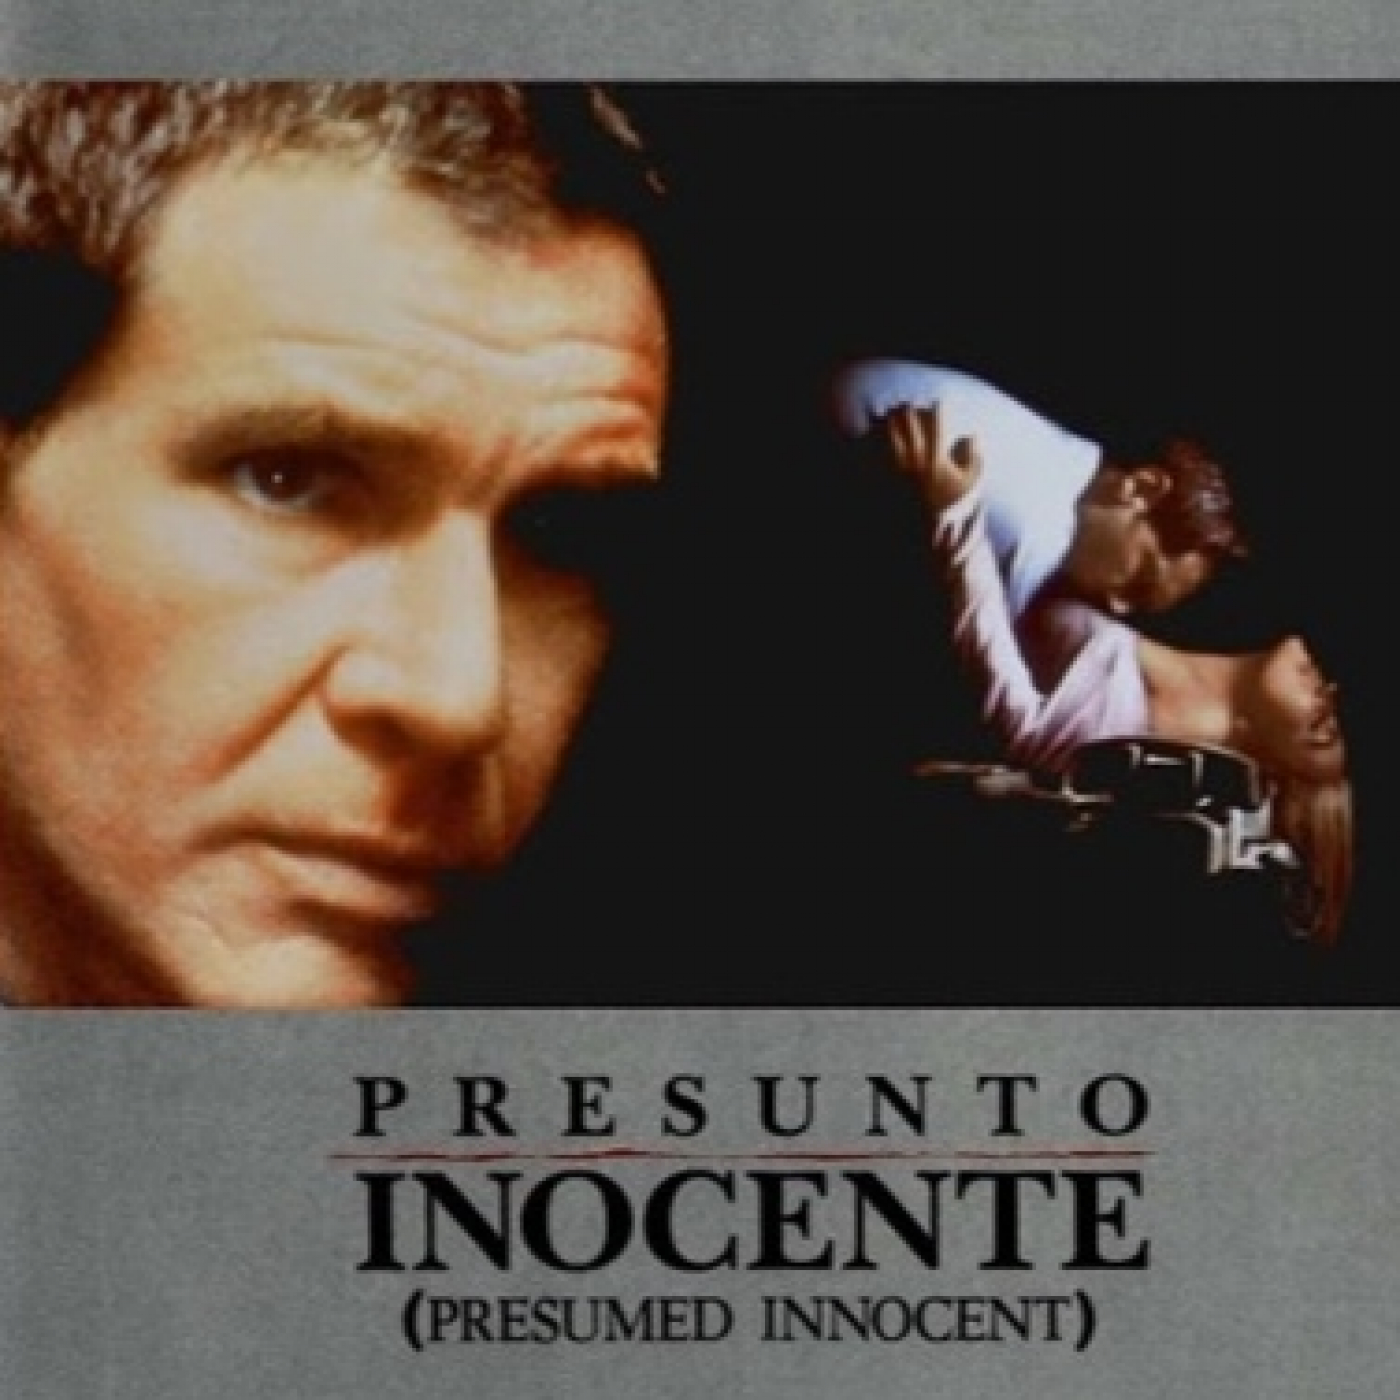 Peticiones Oyentes - Presumed Innocent - 1990